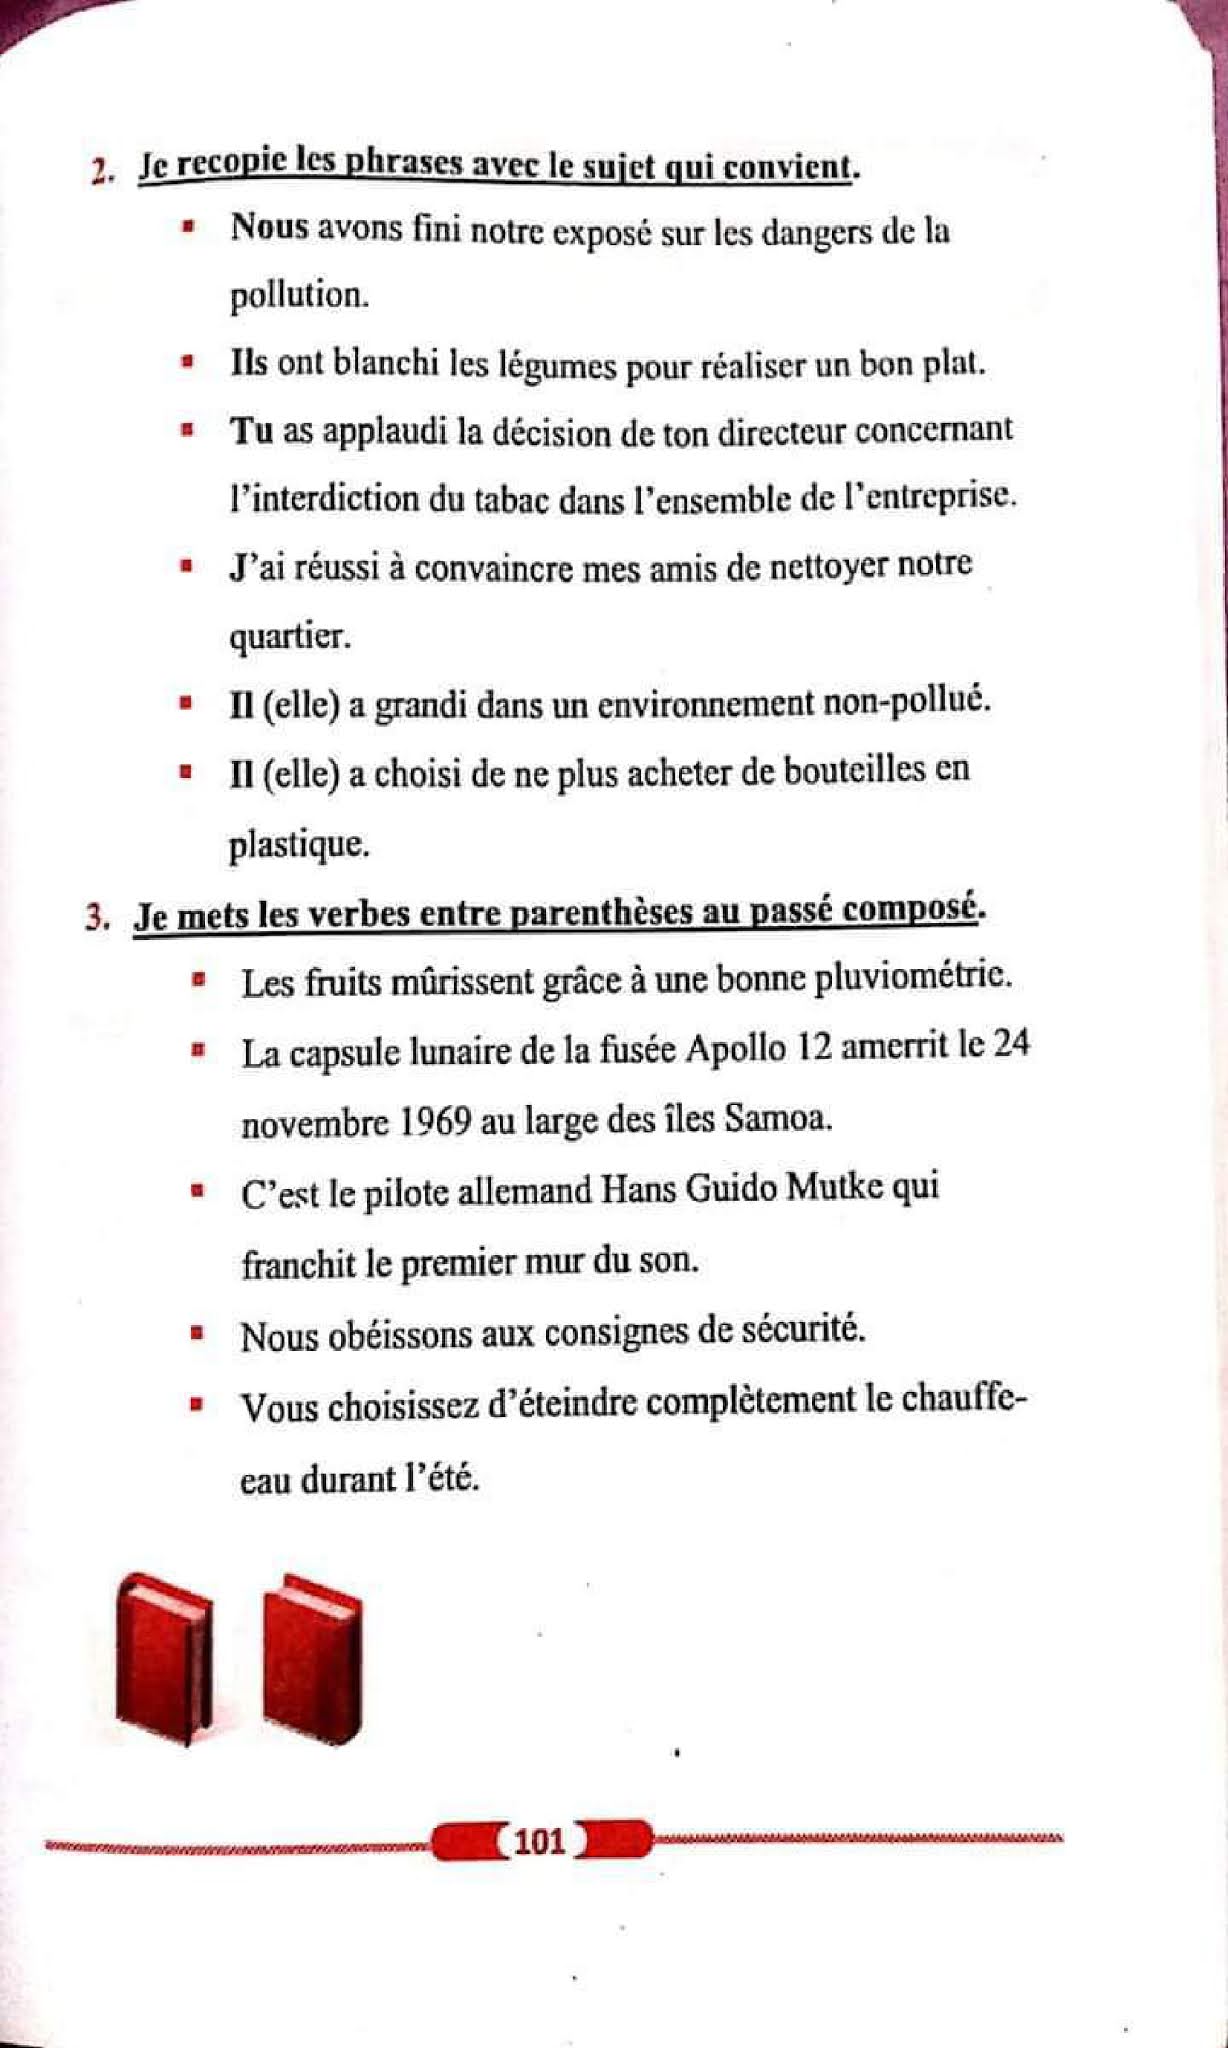 حل تمارين صفحة 107 الفرنسية للسنة الأولى متوسط الجيل الثاني